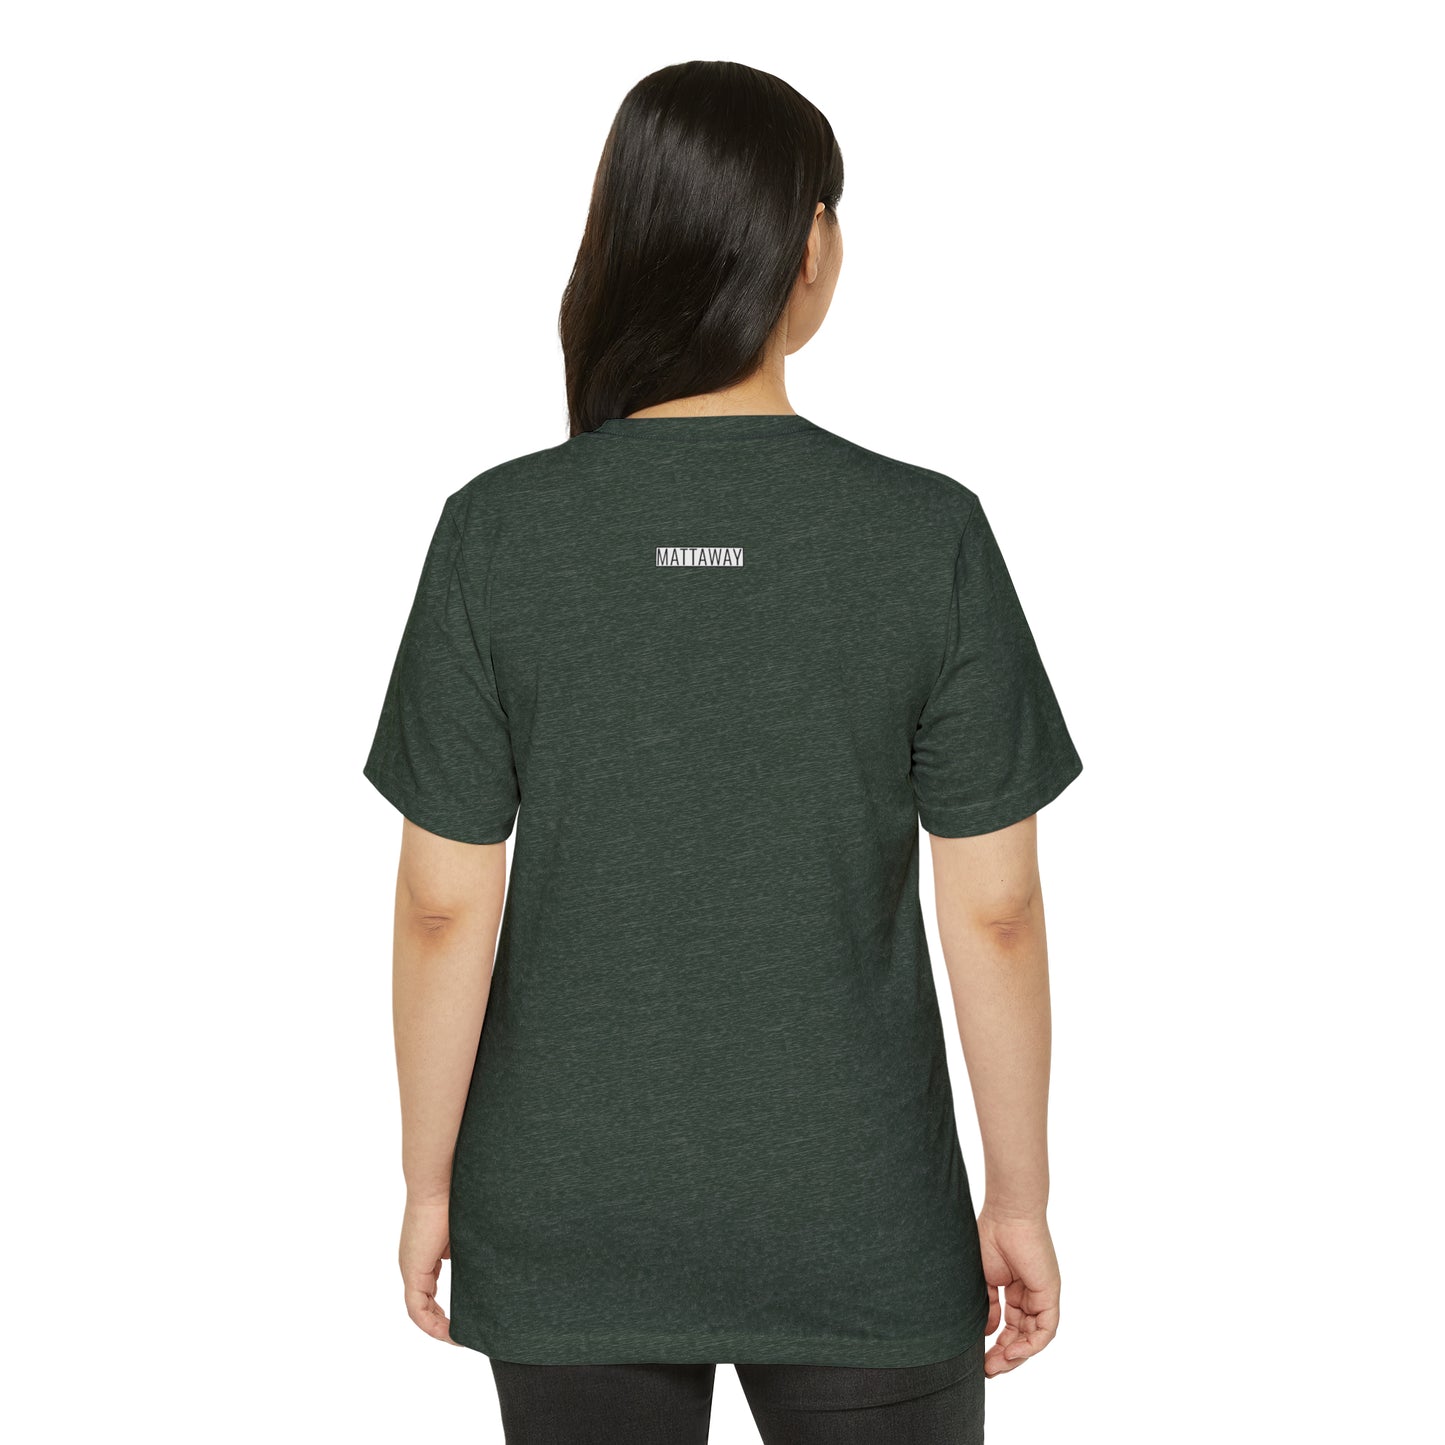 MINIMAL SHAPE 101 - Camiseta ecológica reciclada unisex